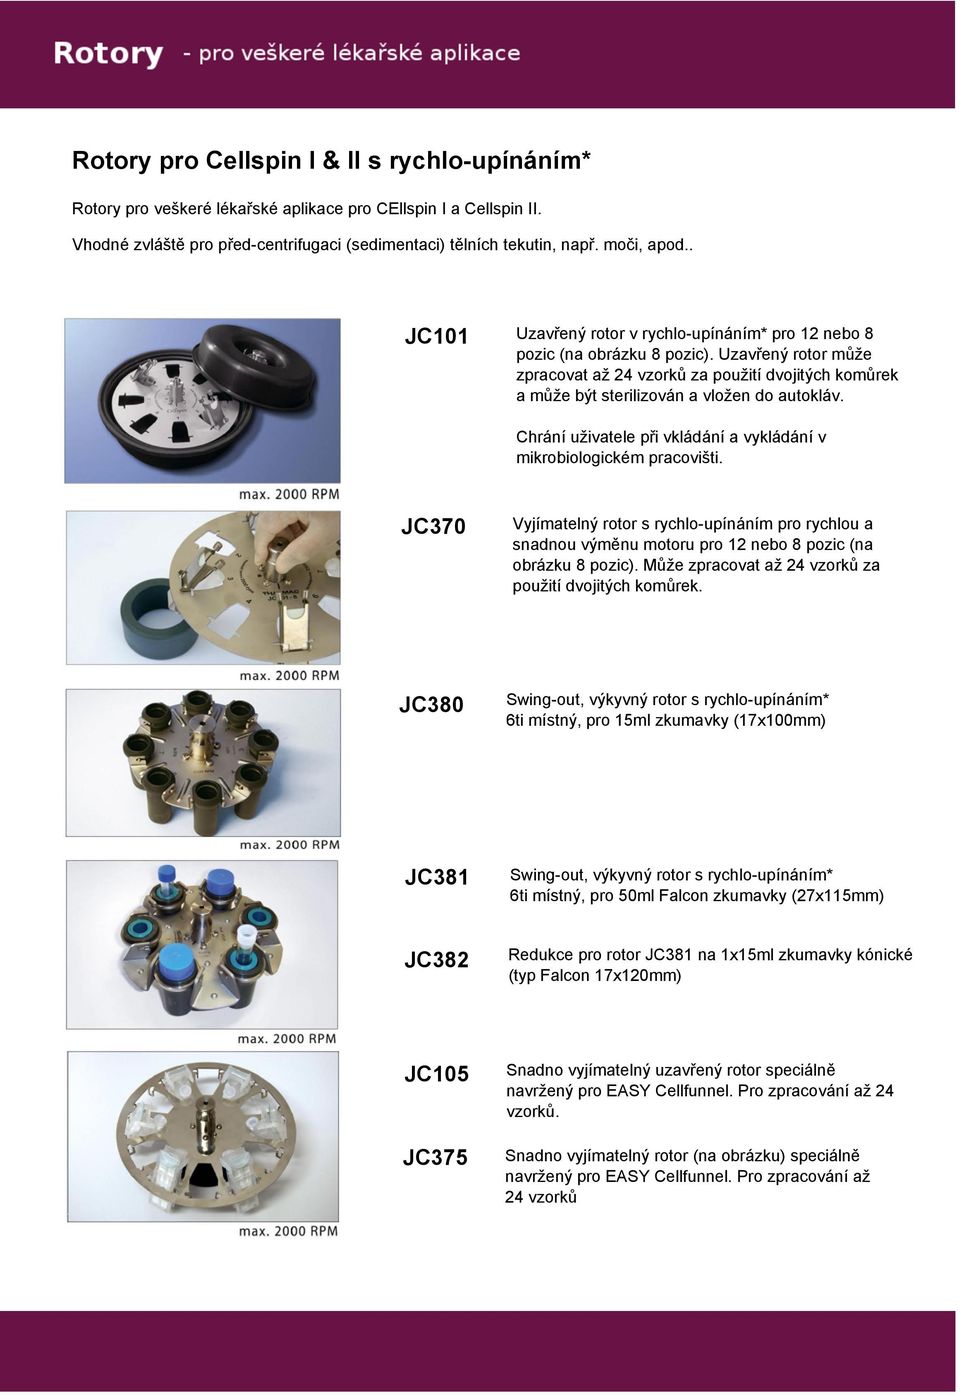 Uzavřený rotor může zpracovat až 24 vzorků za použití dvojitých komůrek a může být sterilizován a vložen do autokláv. Chrání uživatele při vkládání a vykládání v mikrobiologickém pracovišti.